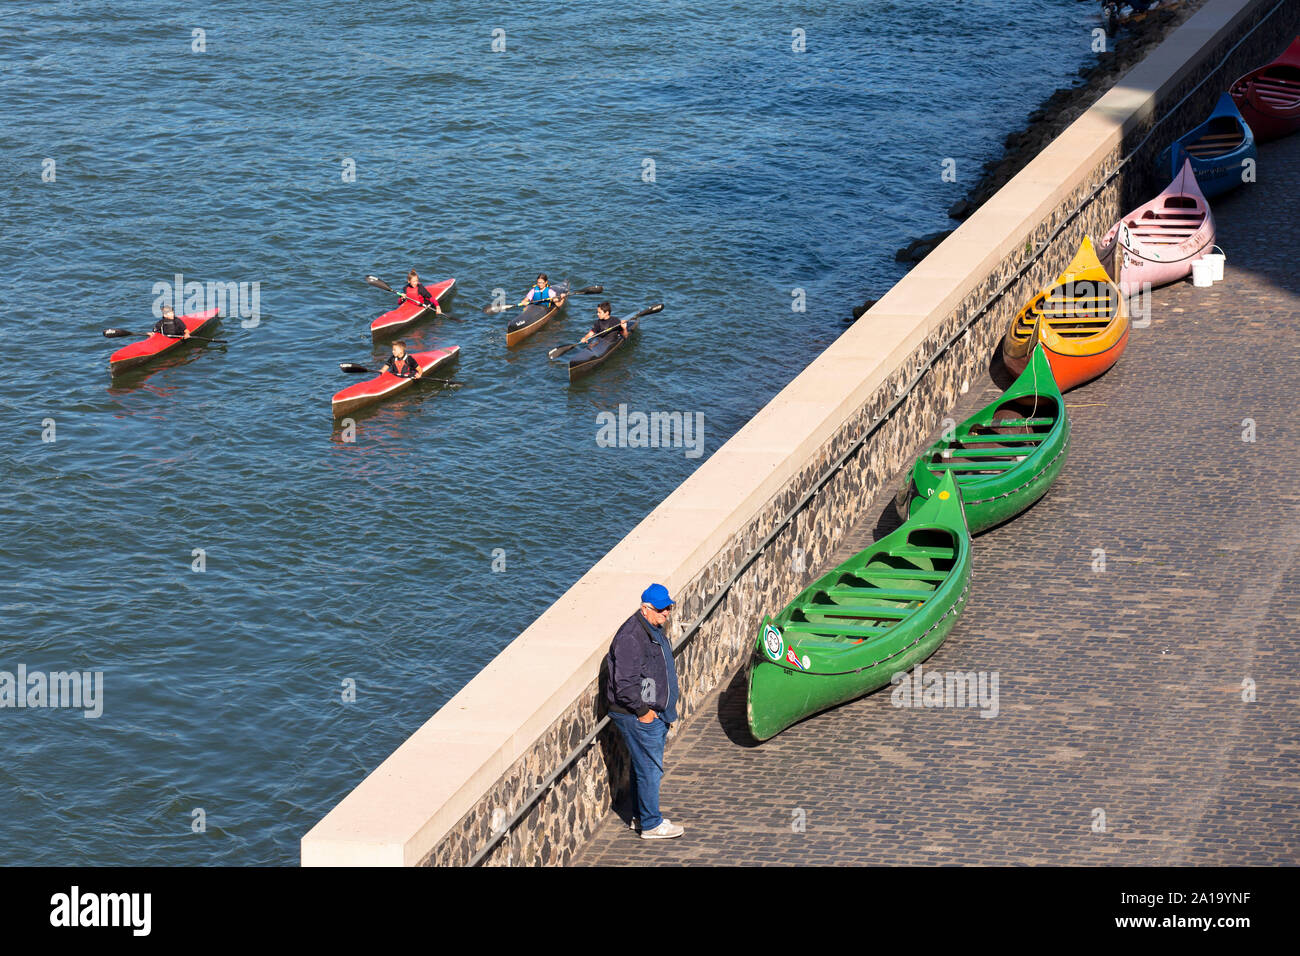 Kajak am Rhein, Köln, Deutschland. Kajakfahrer auf dem Rhein, Koeln,  Deutschland Stockfotografie - Alamy